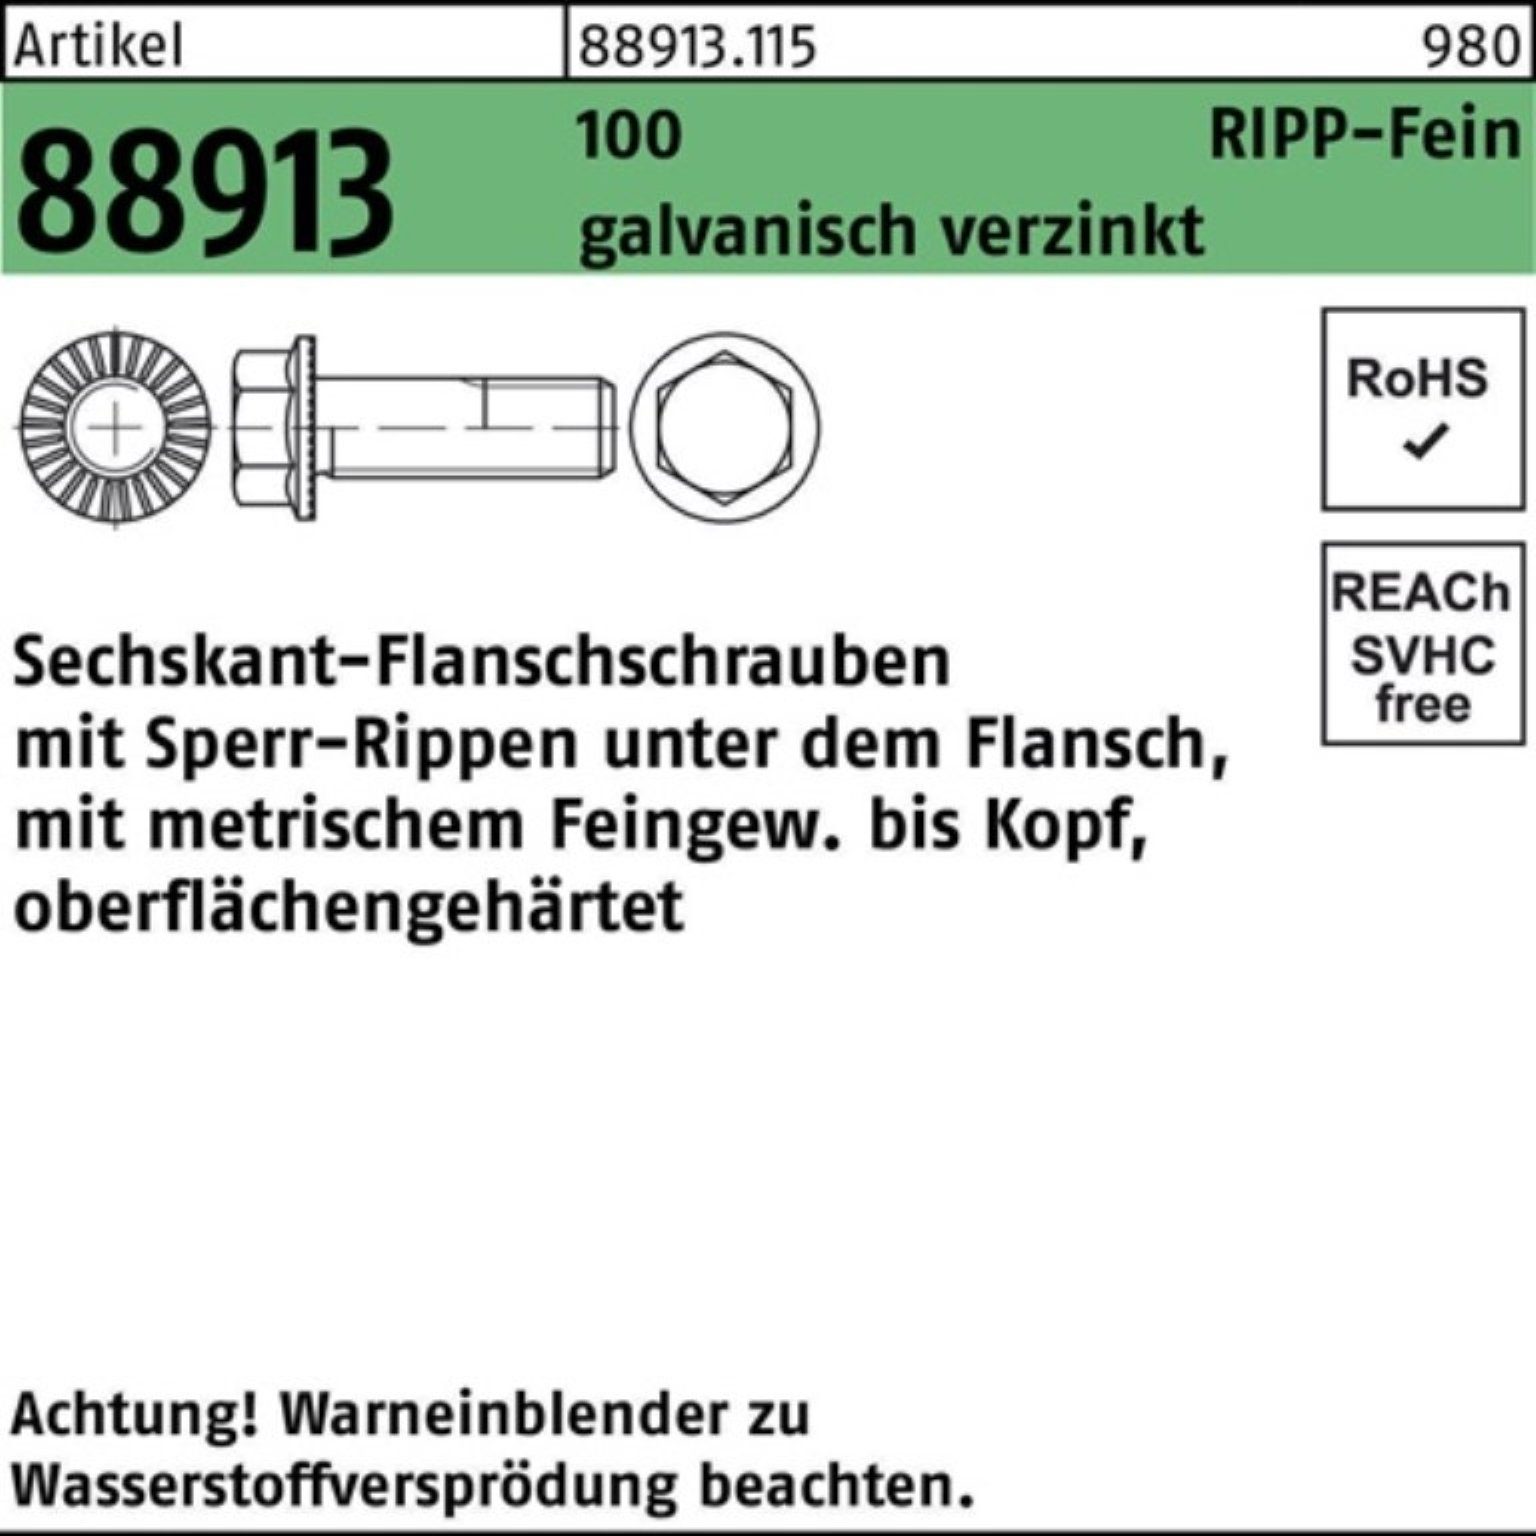 1 VG 100er Pack 88913 R Sperr-Ripp Reyher Sechskantflanschschraube Schraube M14x1,5x50